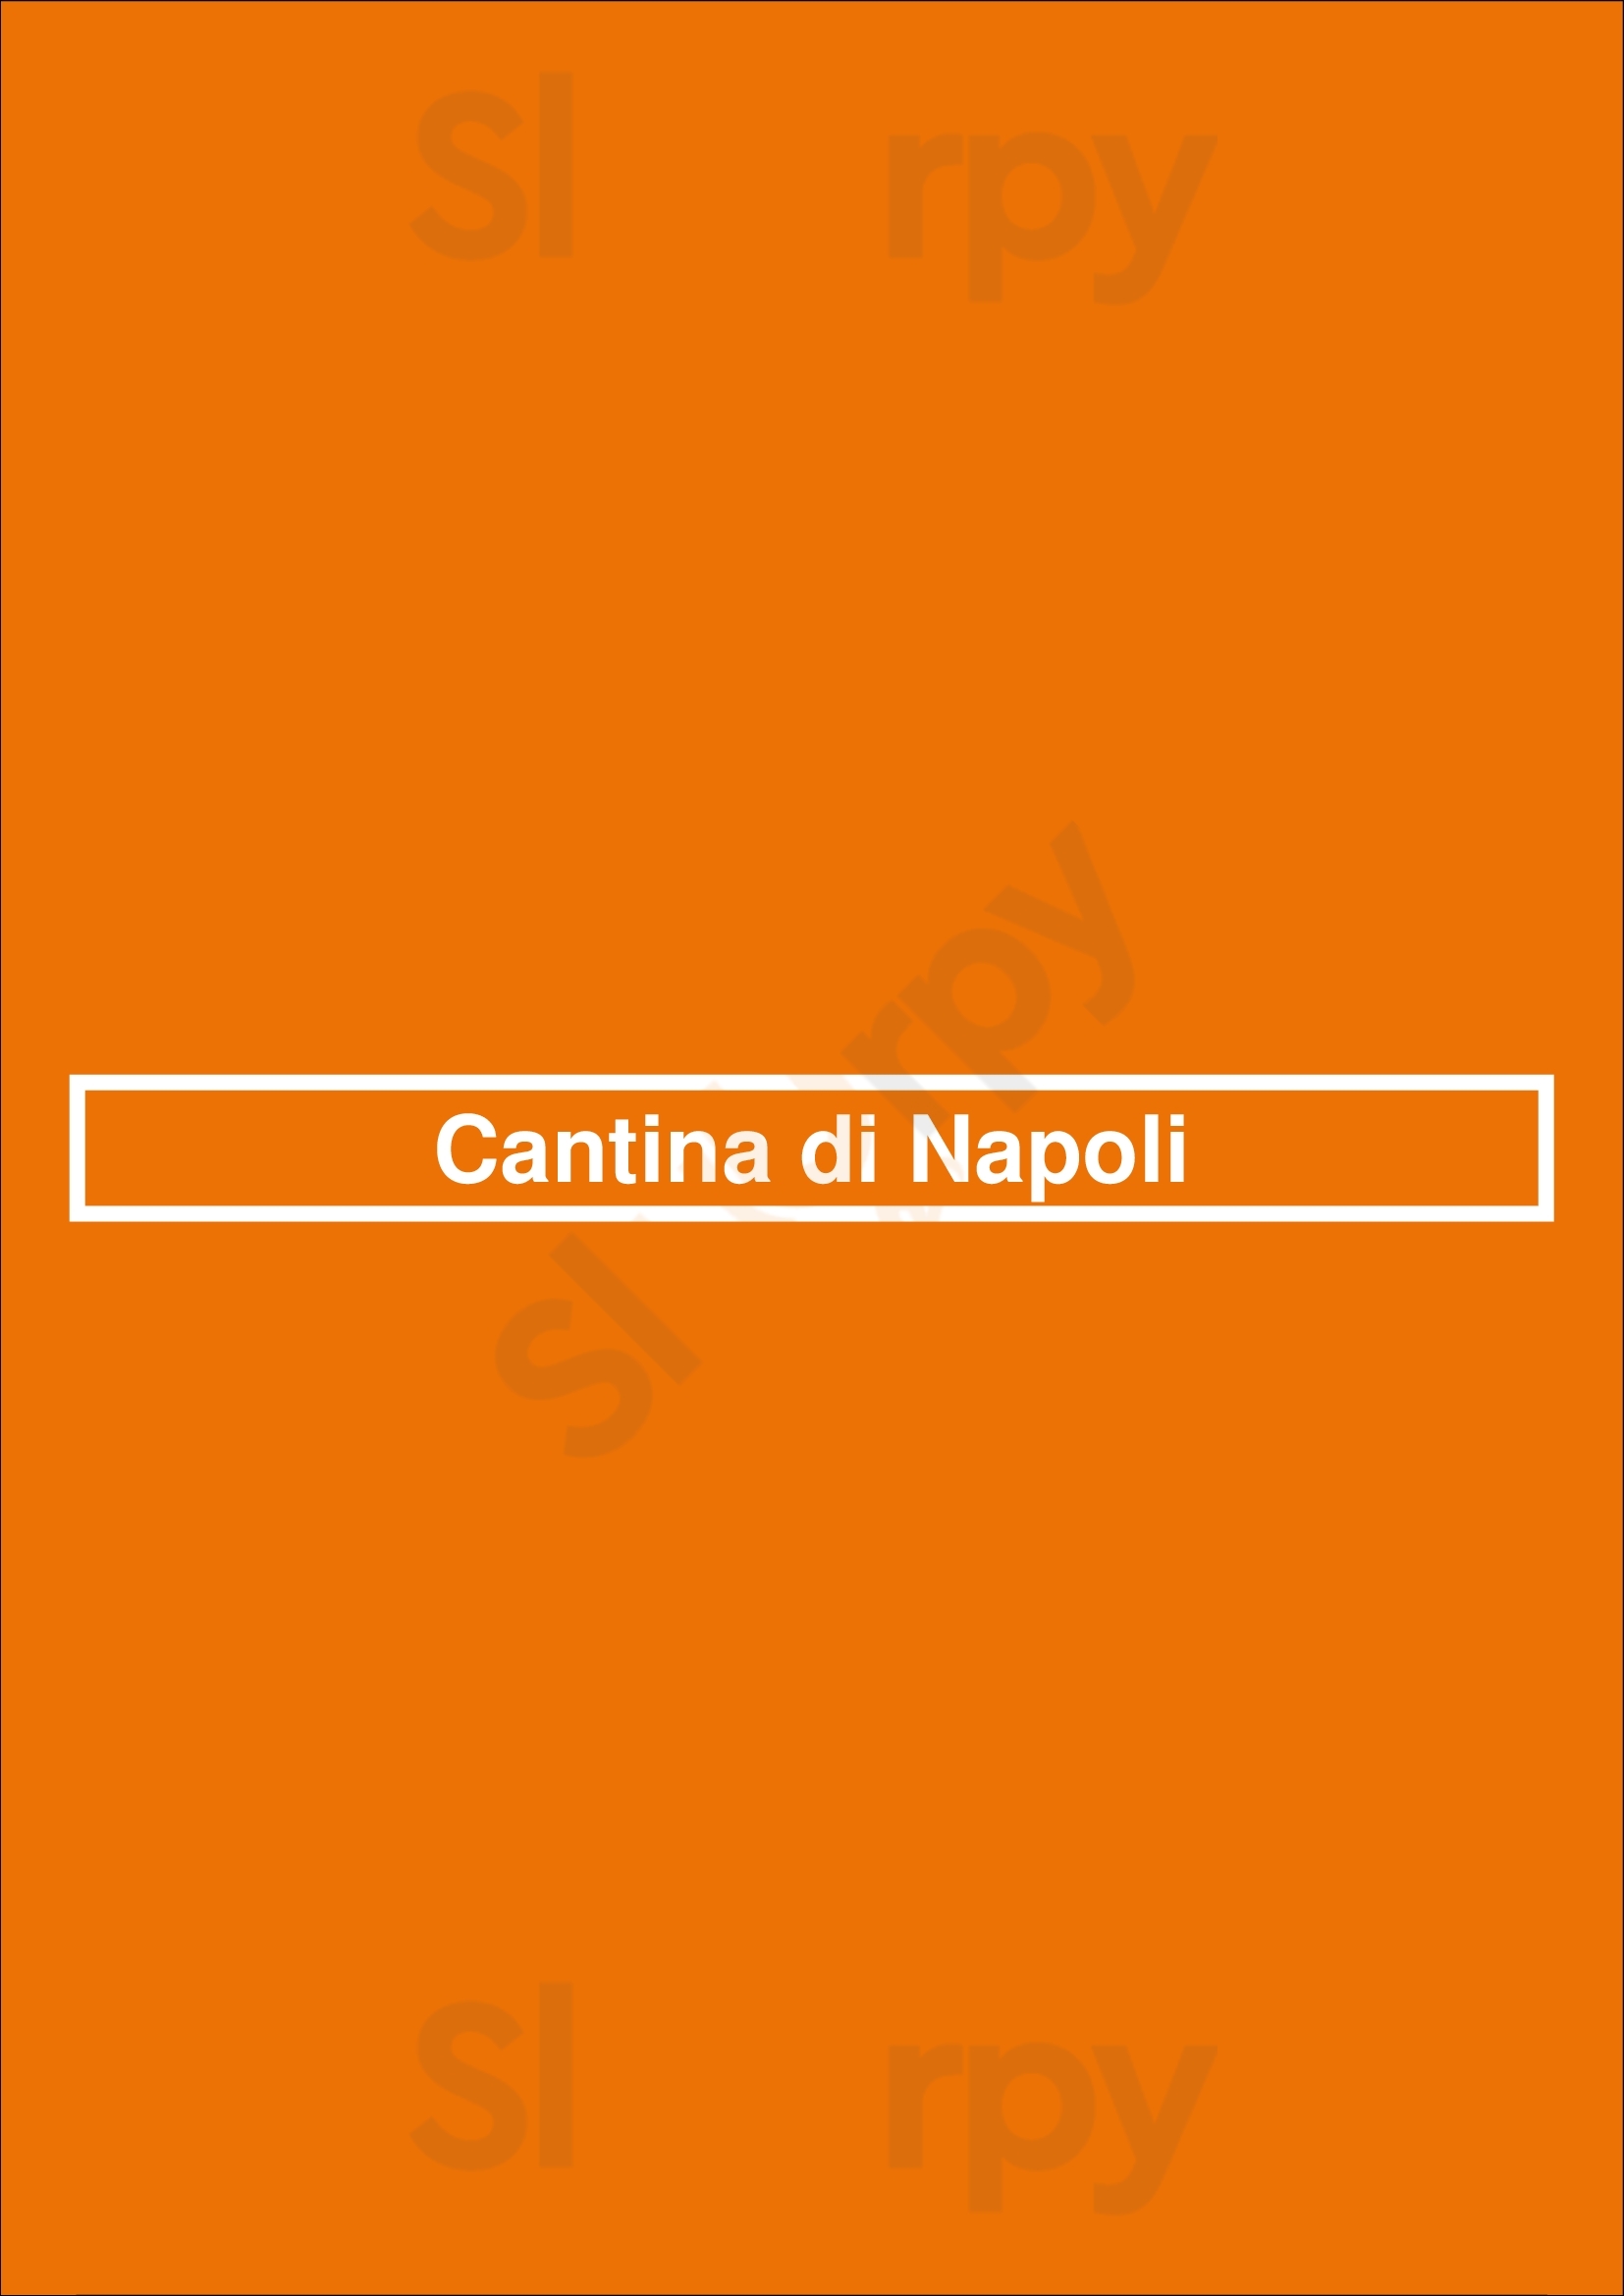 Cantina Di Napoli Fortaleza Menu - 1